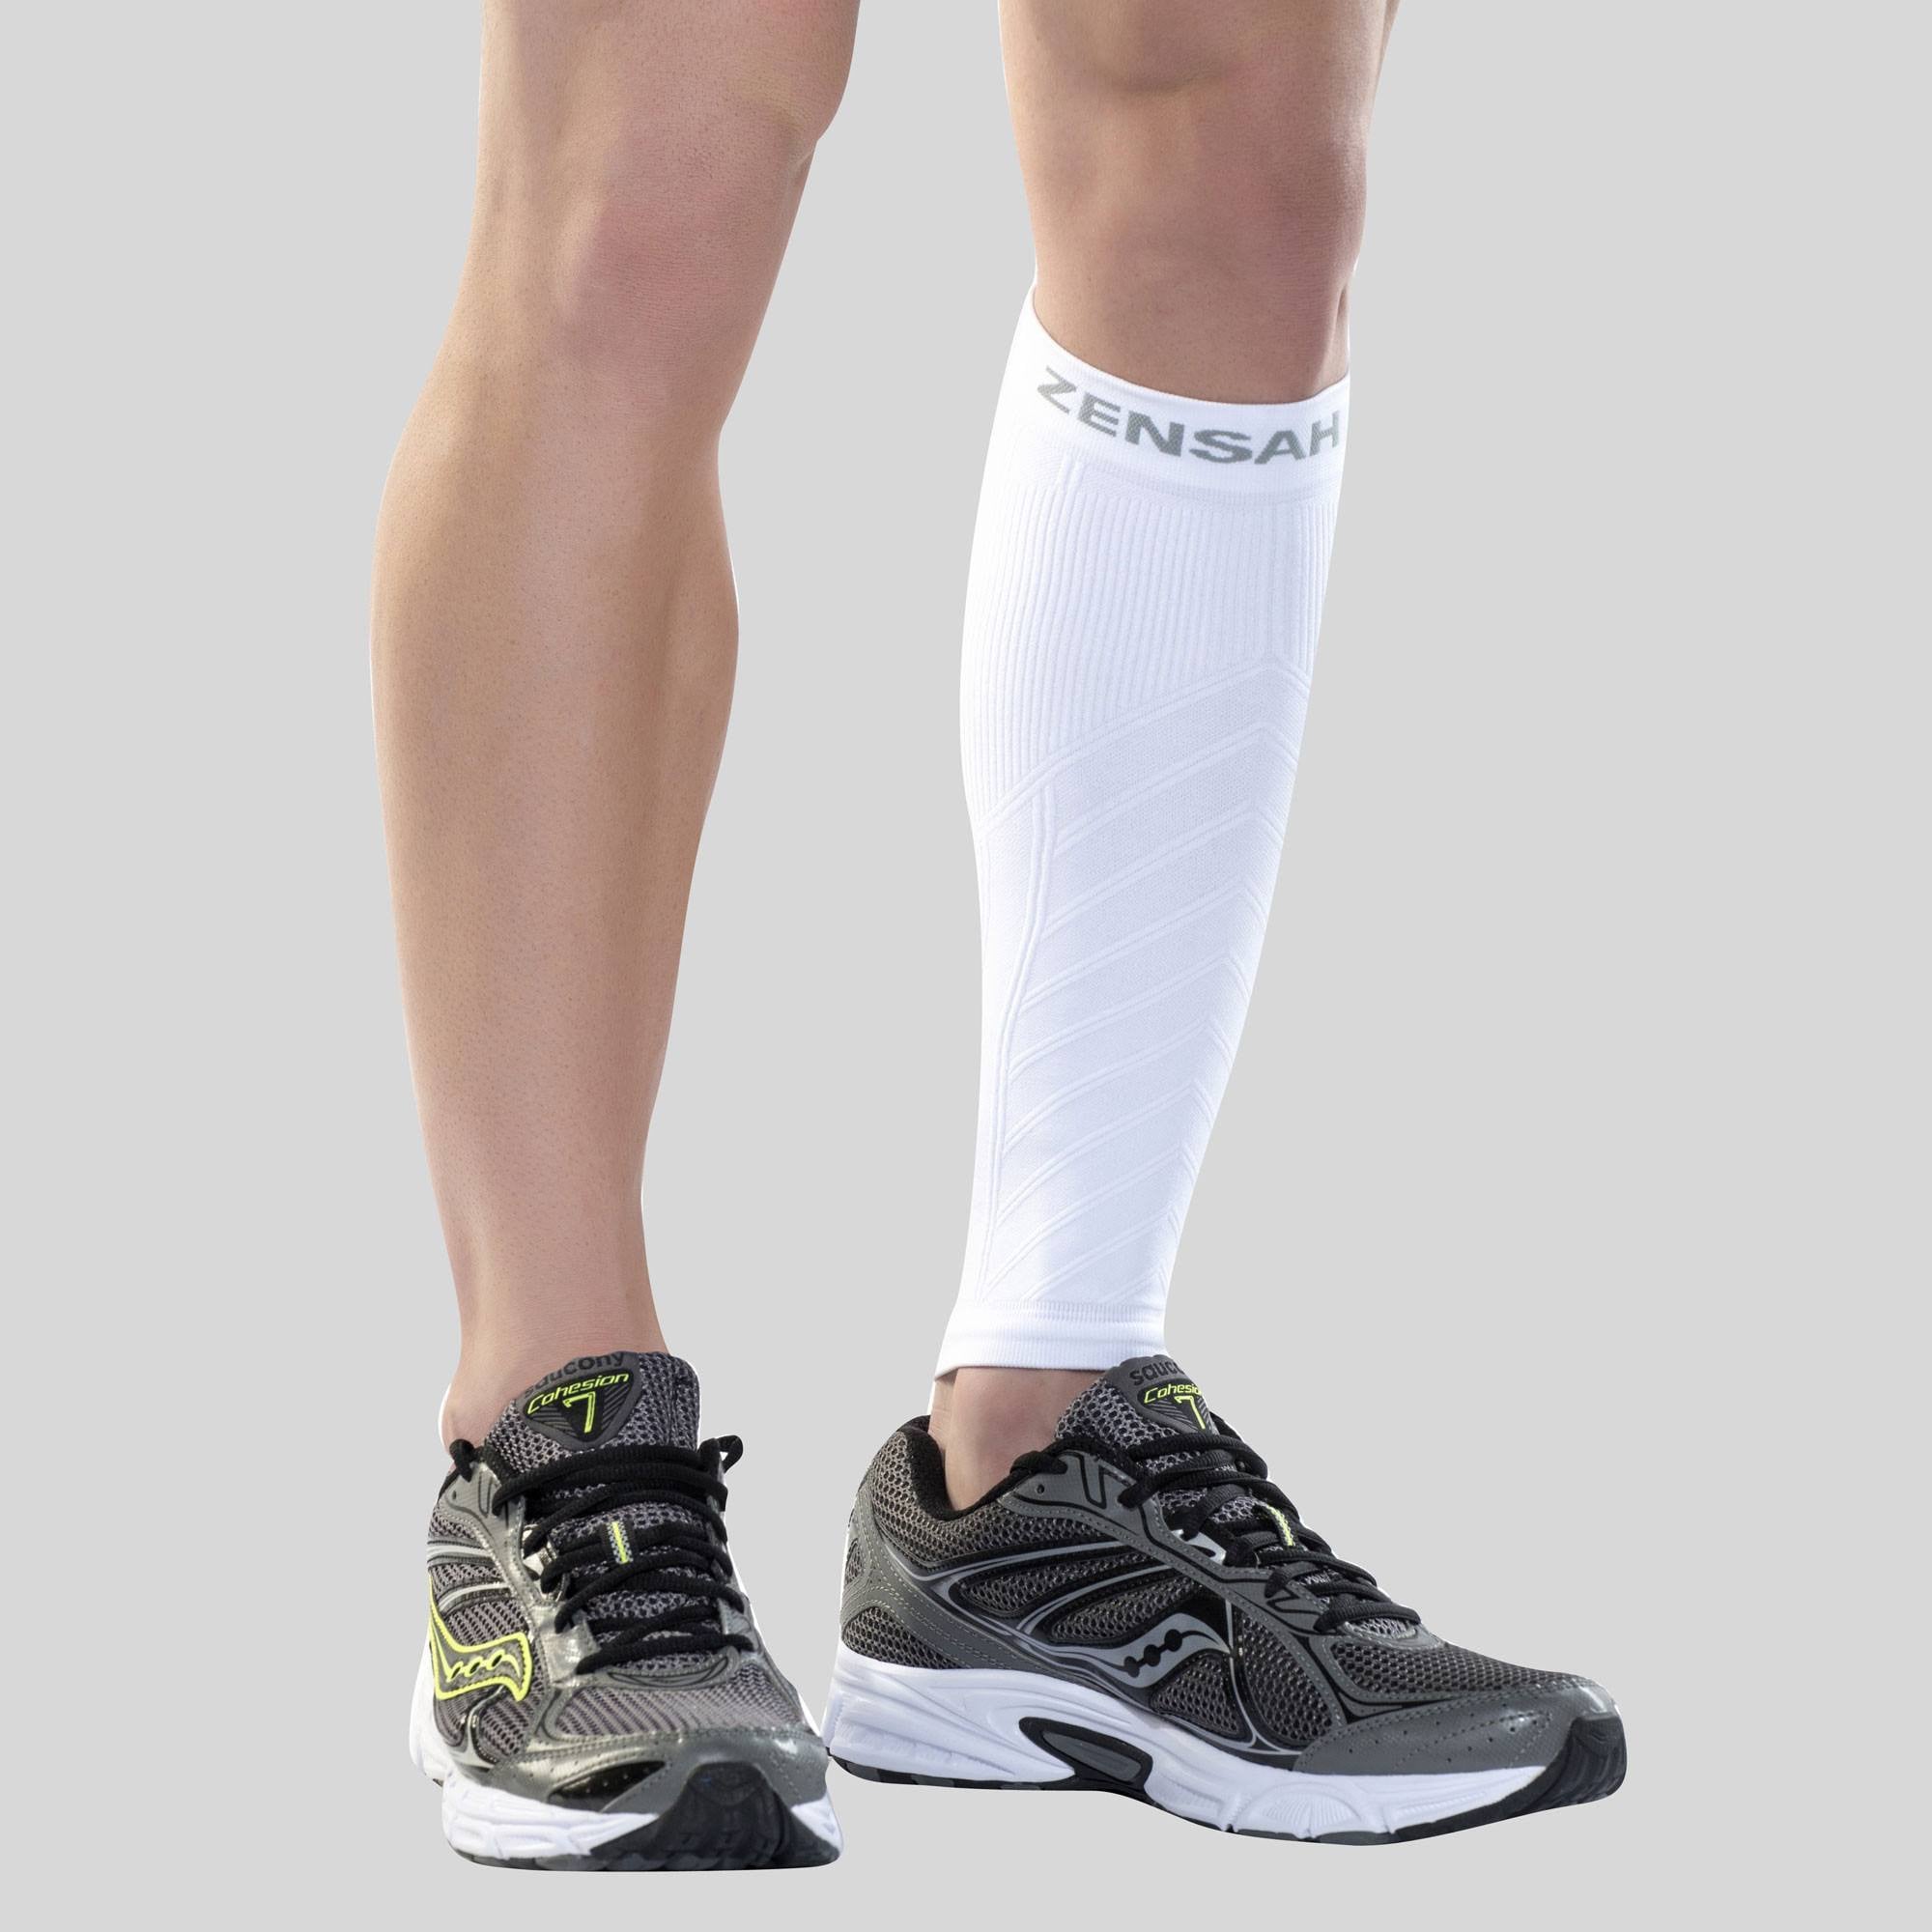 Leg & Calf Compression Sleeve (1 Pair) Shin Splint & Calf Pain